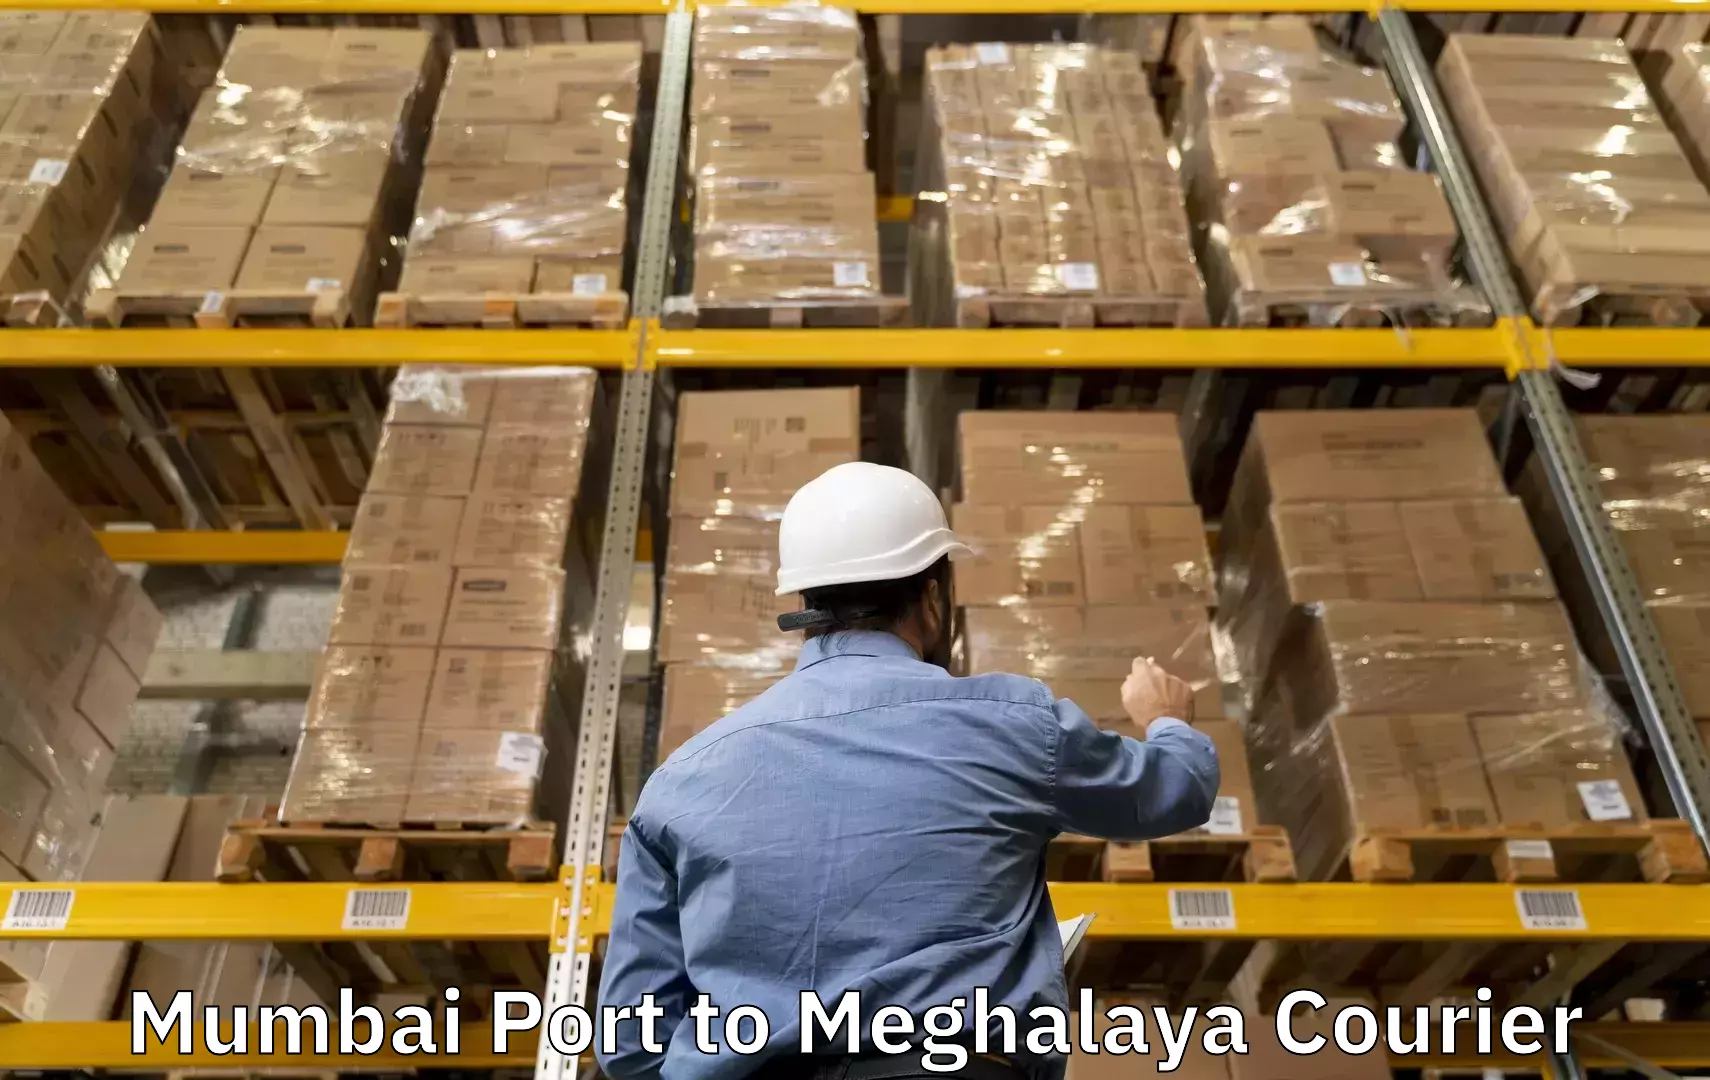 Baggage transport updates Mumbai Port to Meghalaya